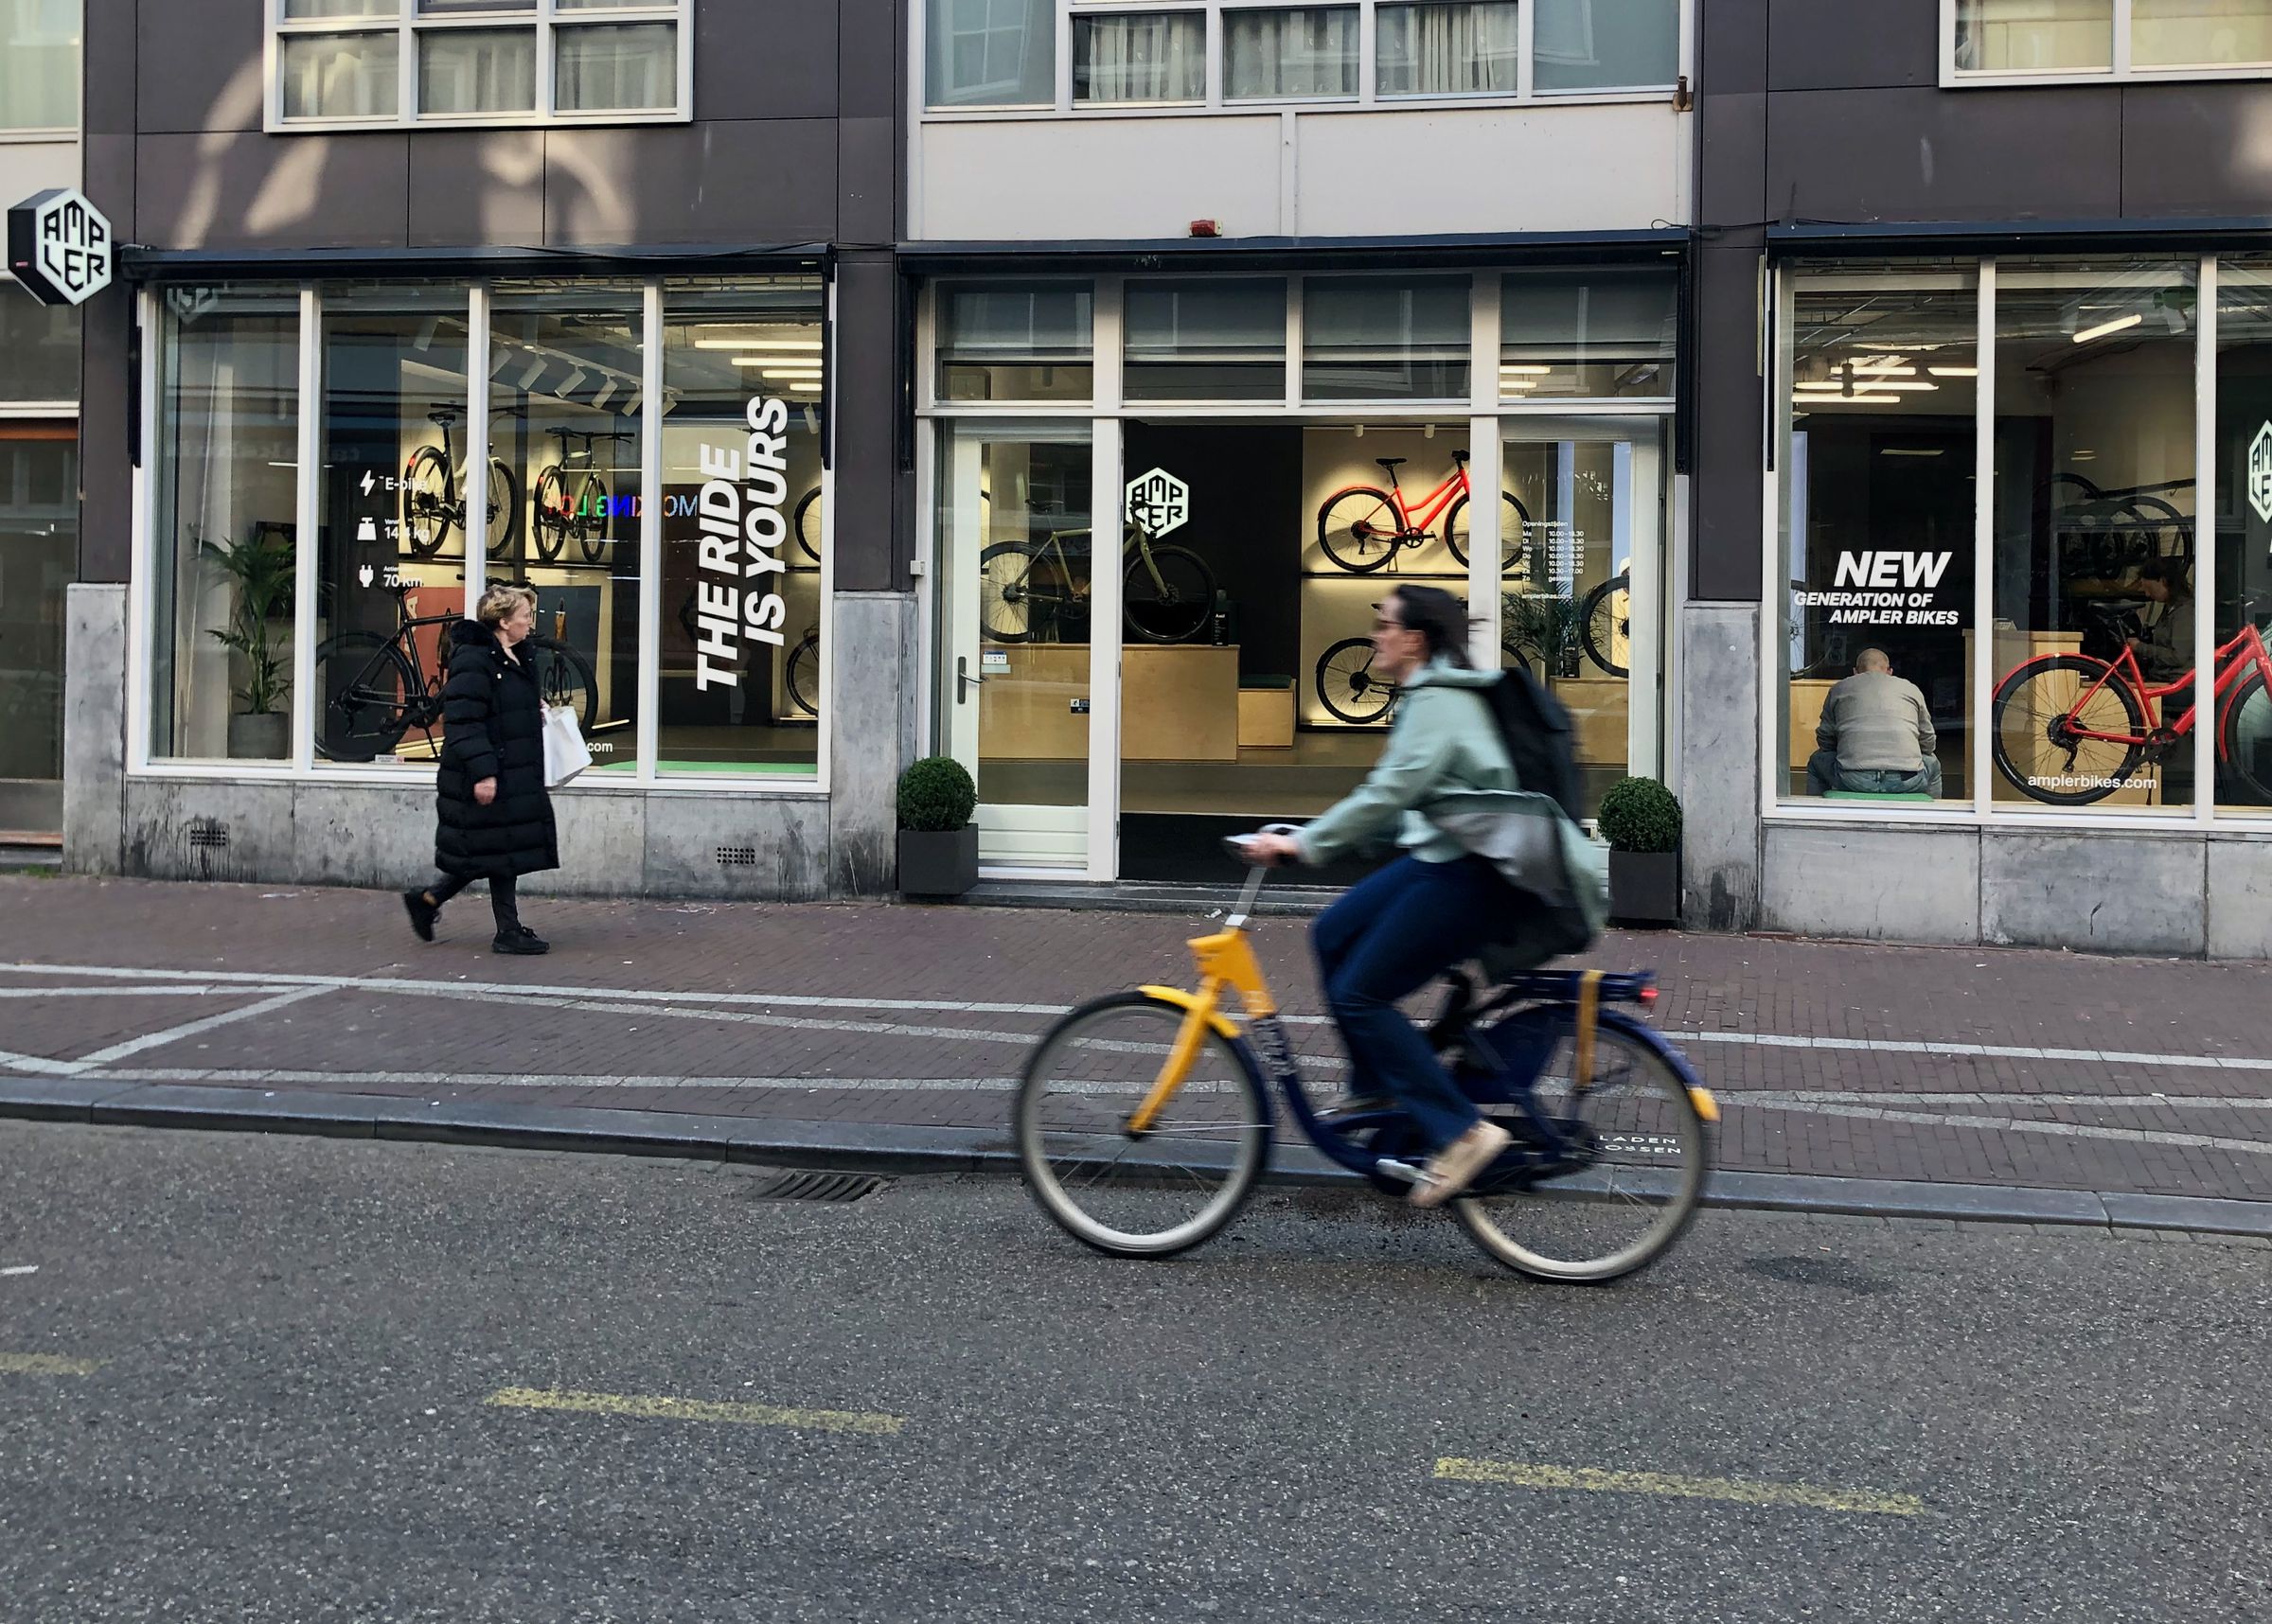 Trung tâm dịch vụ và phòng trưng bày Ampler của Amsterdam đã khai trương vào năm ngoái, chỉ cách Ga Trung tâm vài bước chân (bấm vào đây để phóng to).